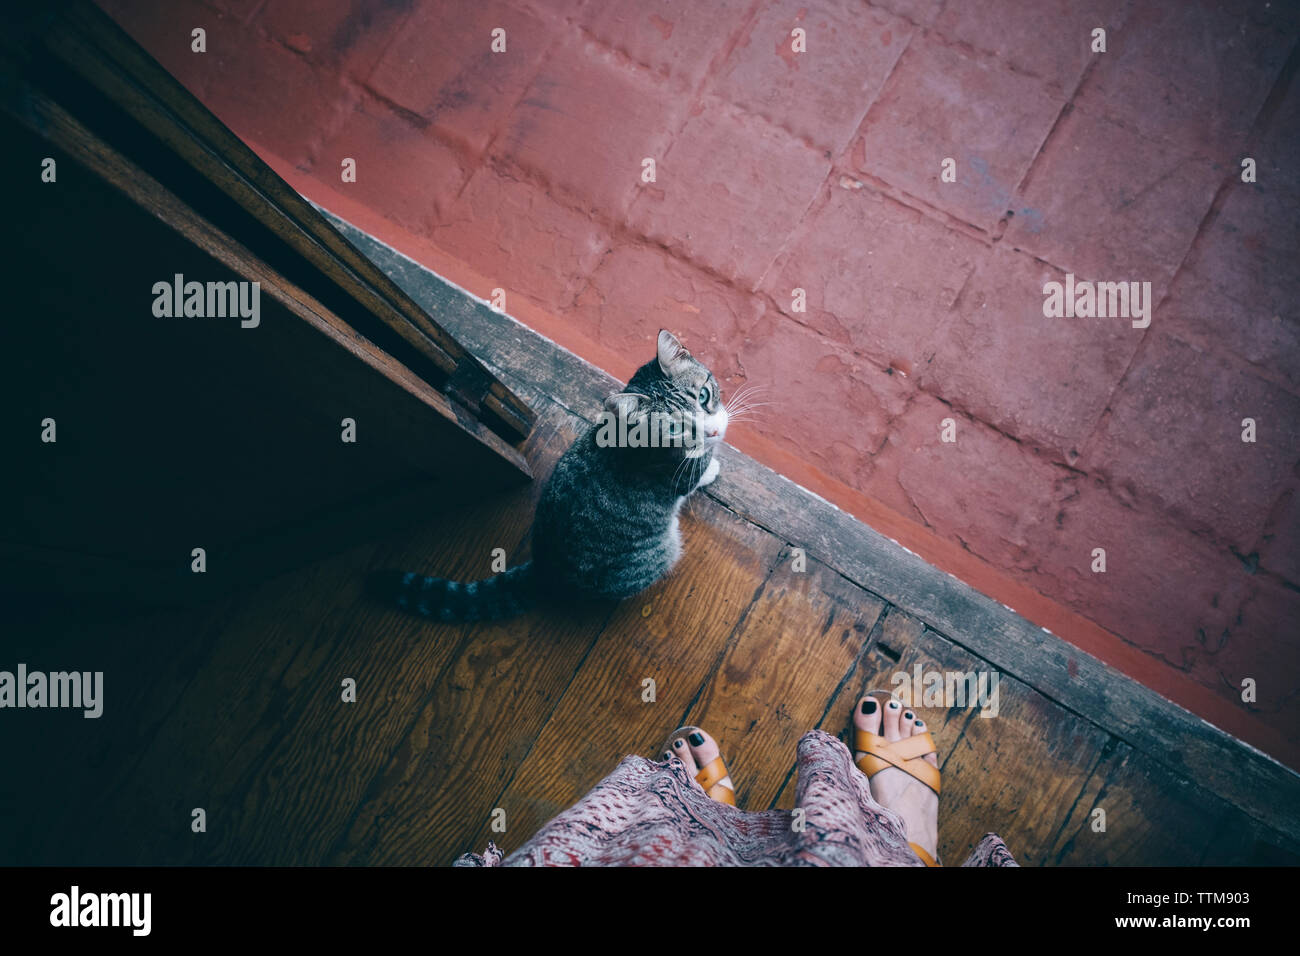 La section basse de la femme par le cat debout sur un plancher en bois Banque D'Images